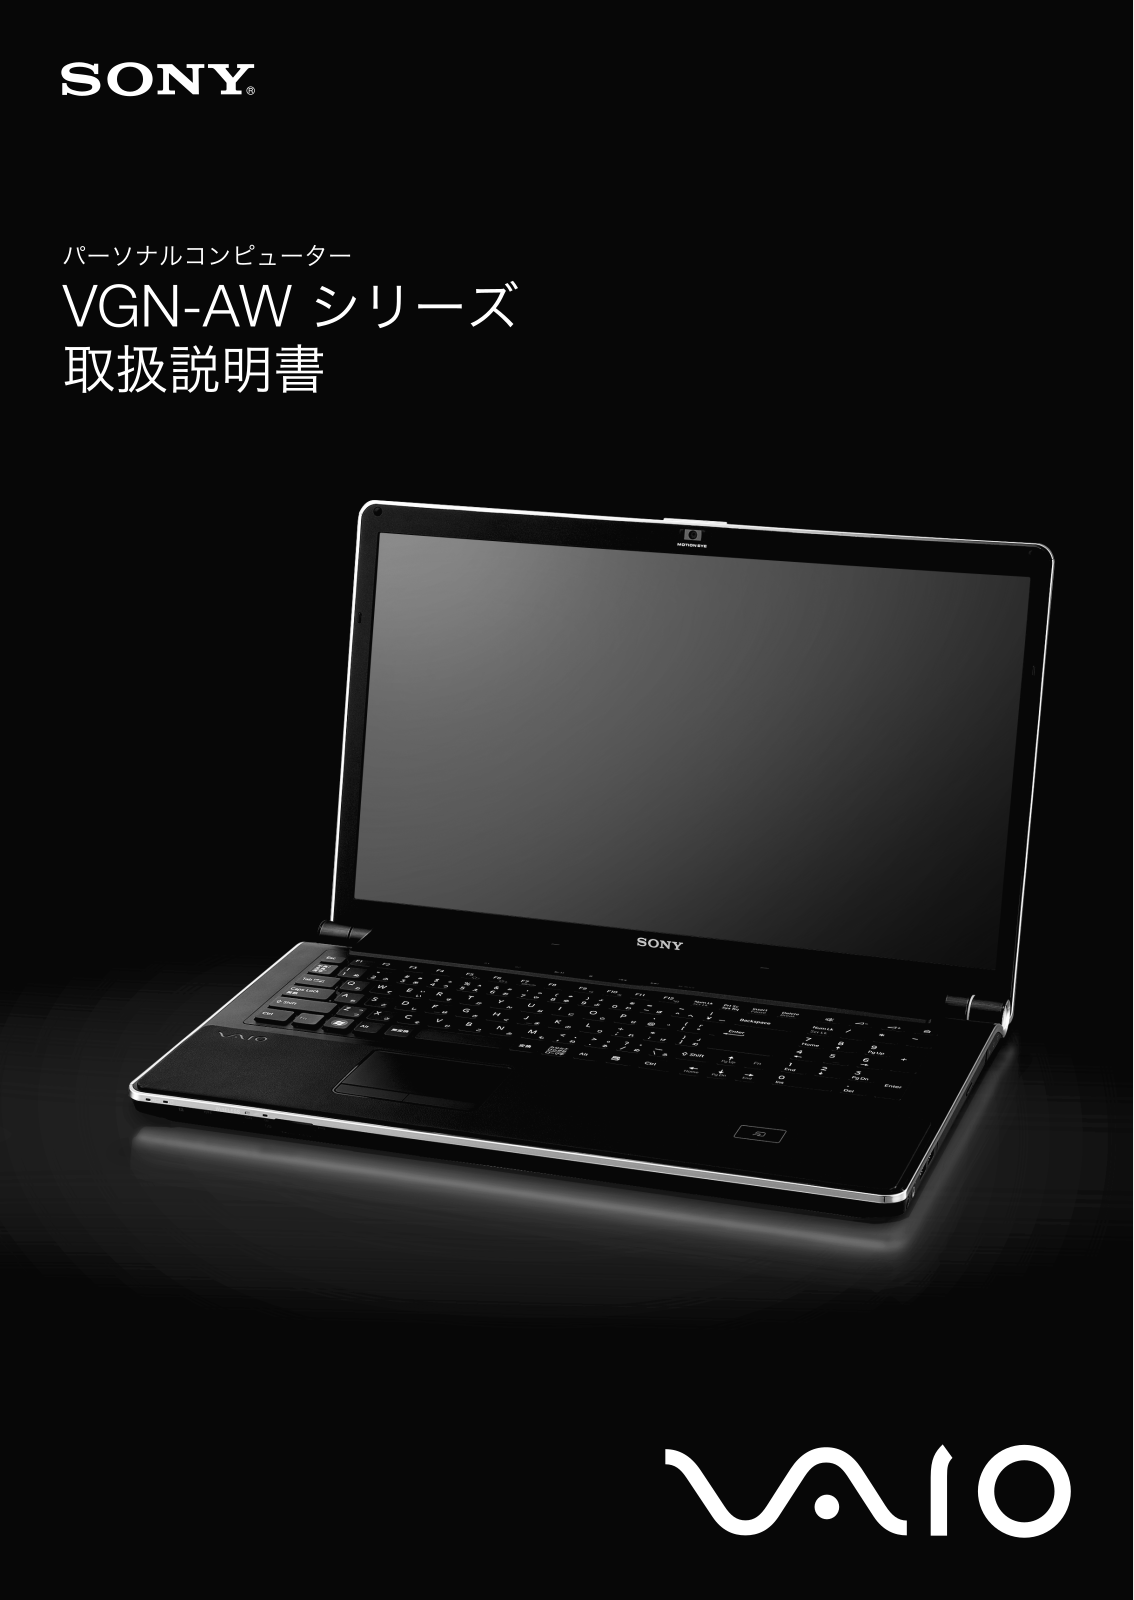 Sony VAIO VGN-AW80US, VAIO VGN-AW90NS, VAIO VGN-AW80S, VAIO VGN-AW90US, VAIO VGN-AW50DB/H User Manual